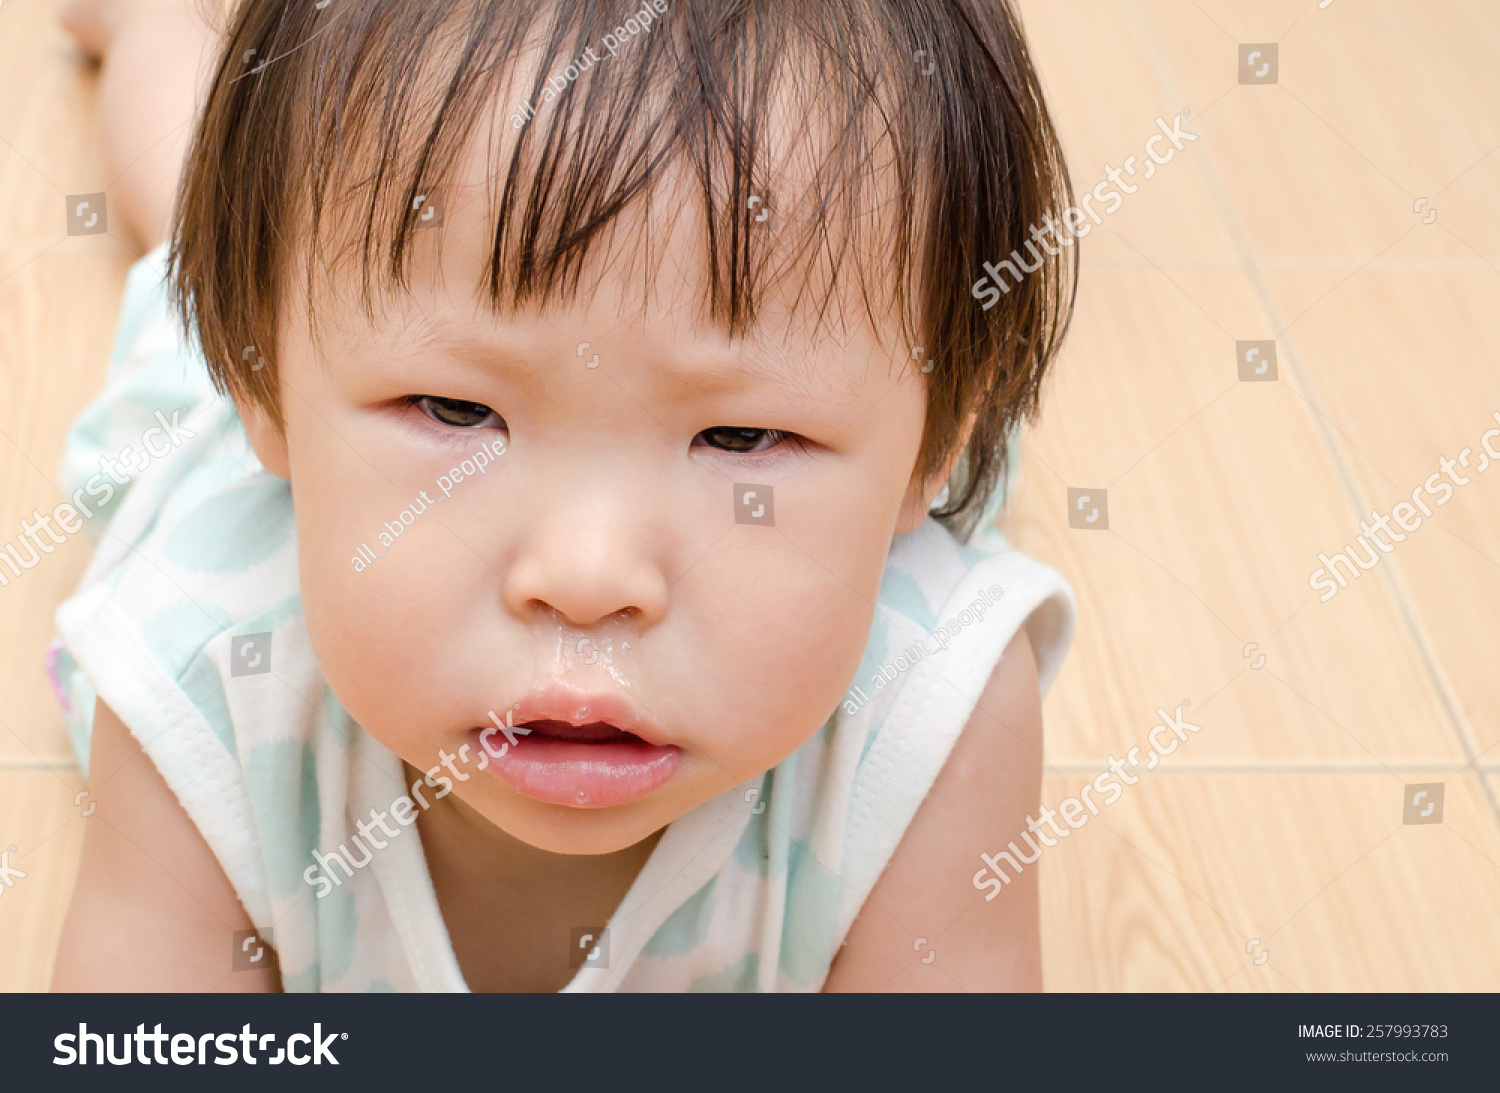 亚洲女孩的鼻涕从她的鼻子流出来 - 医疗保健,